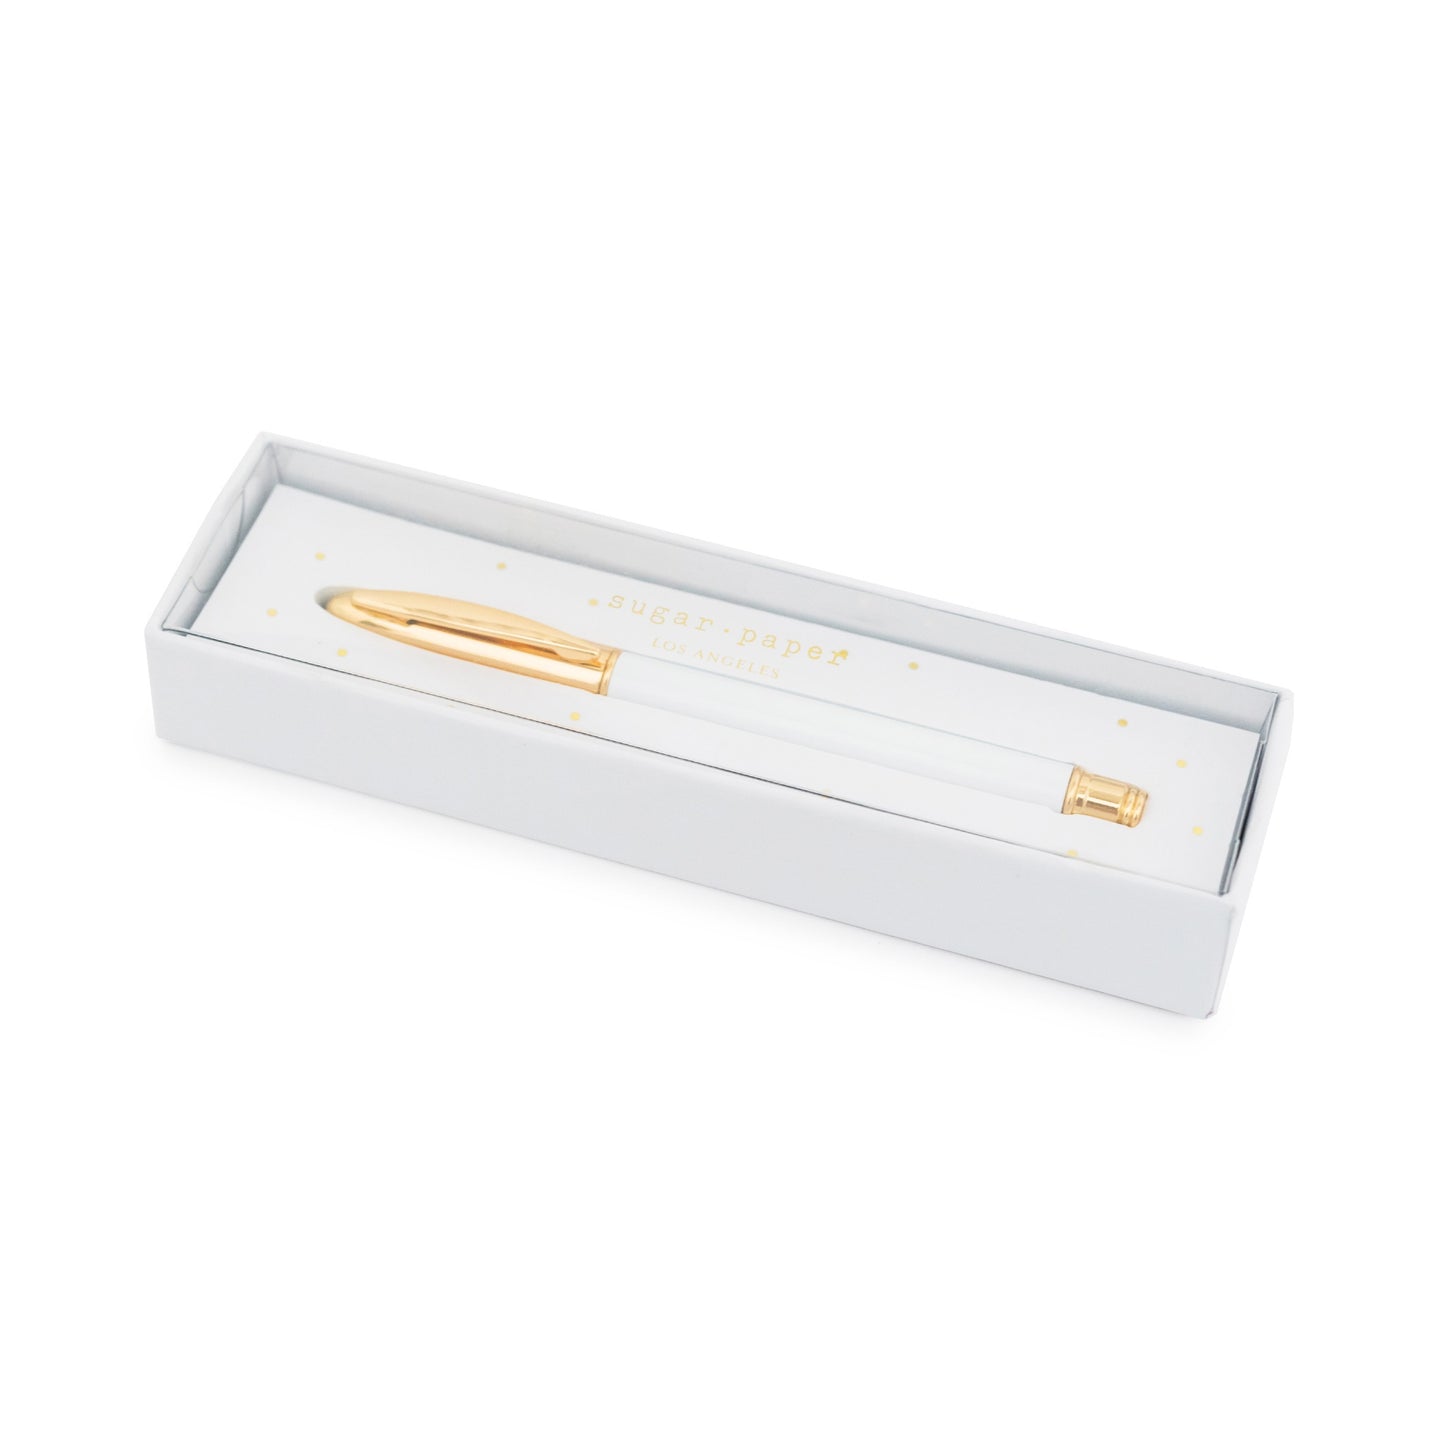 white signature pen in box